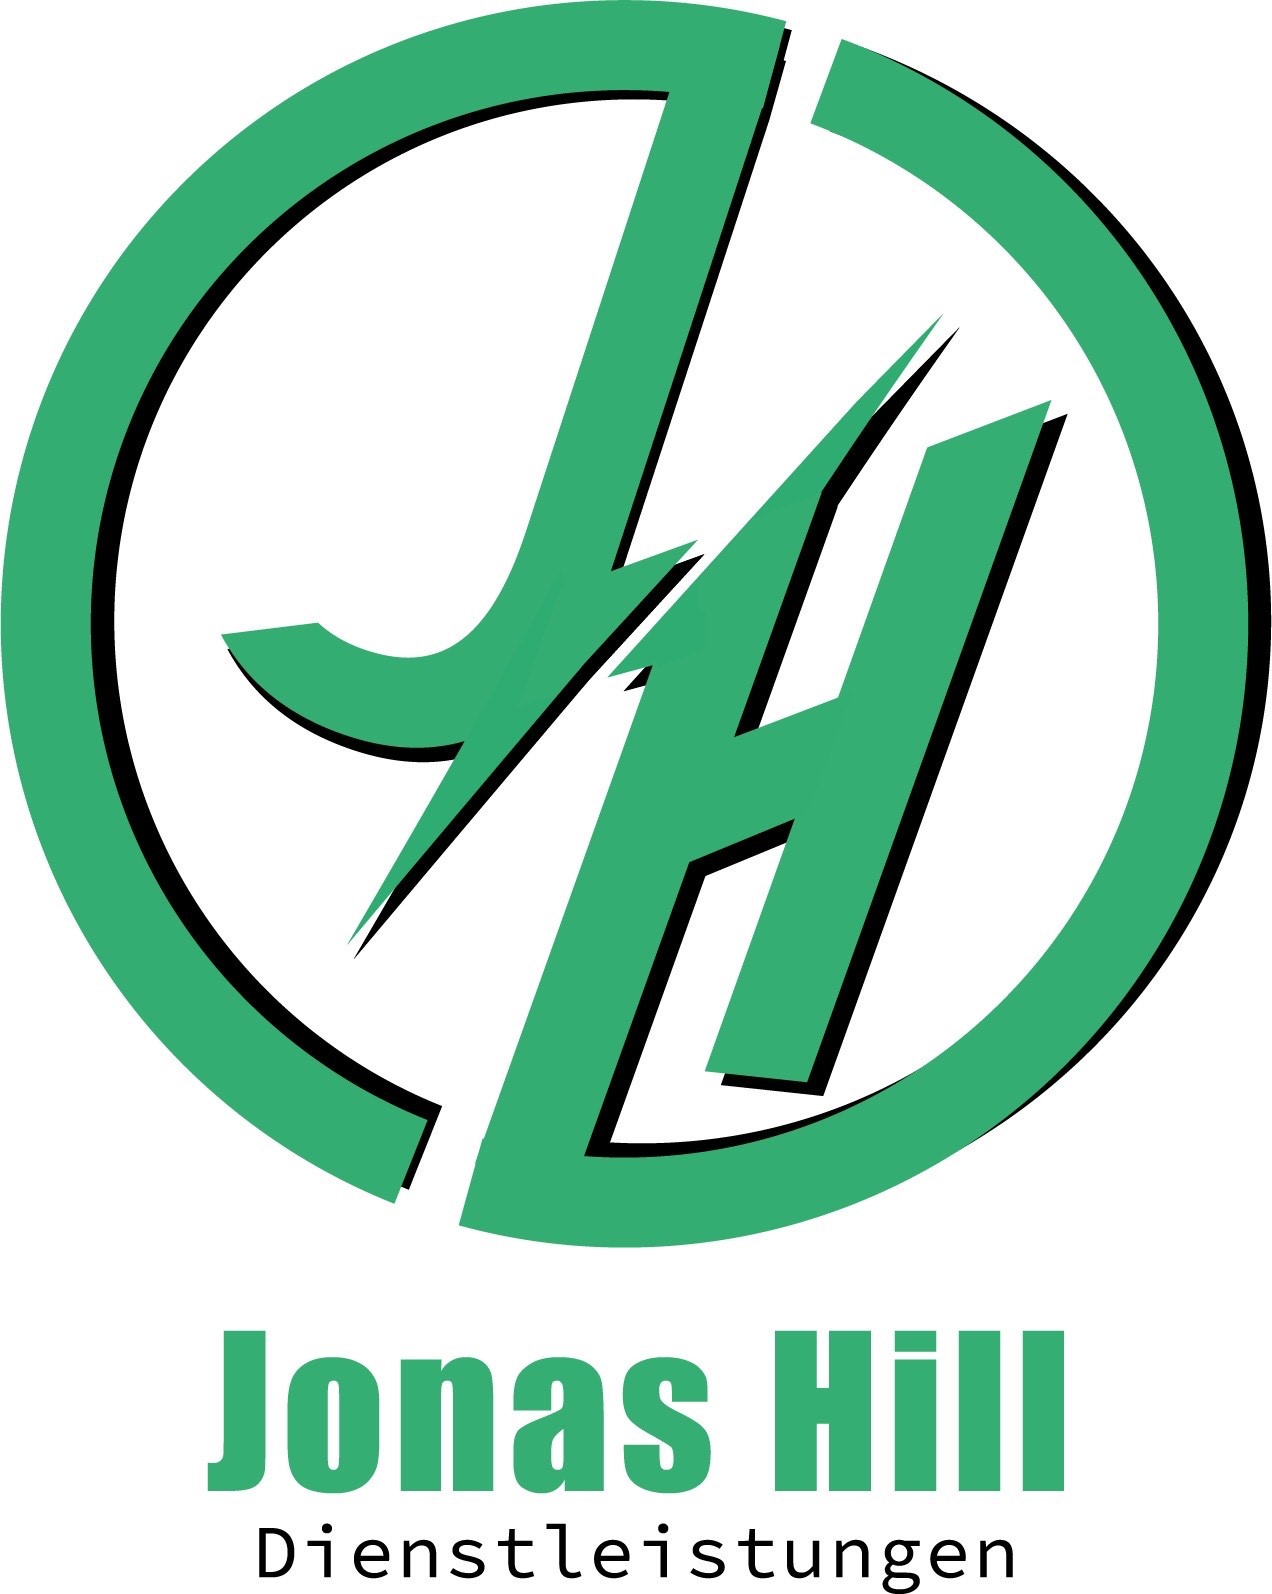 Jonas Hill - Dienstleistungen